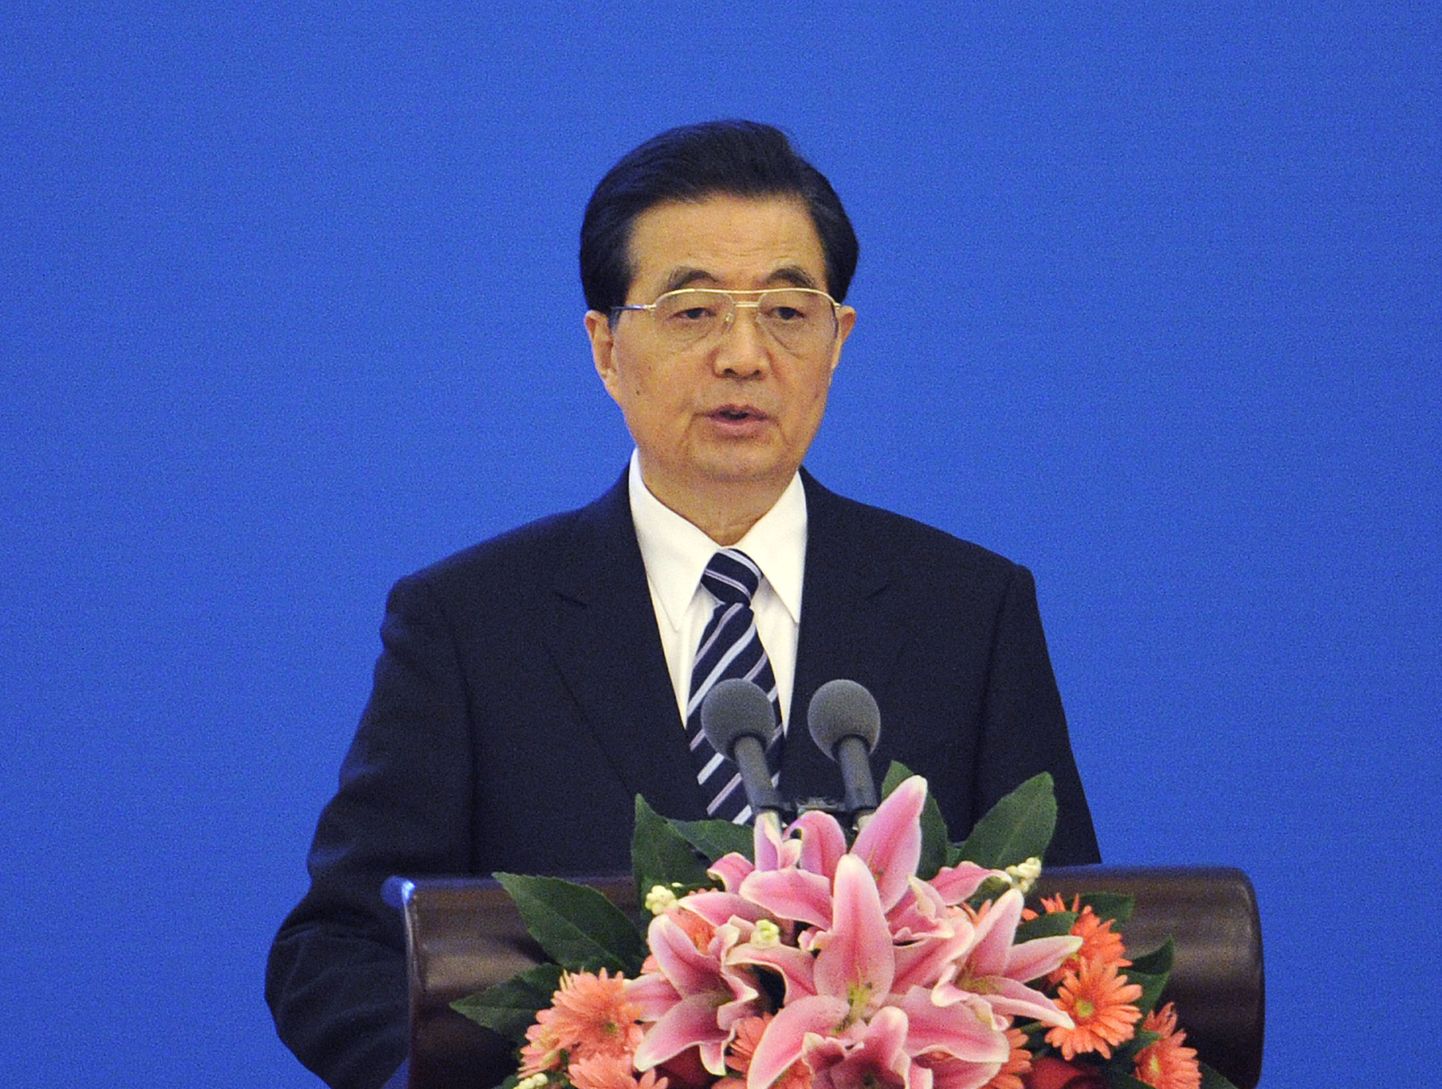 Hiina president Hu Jintao.